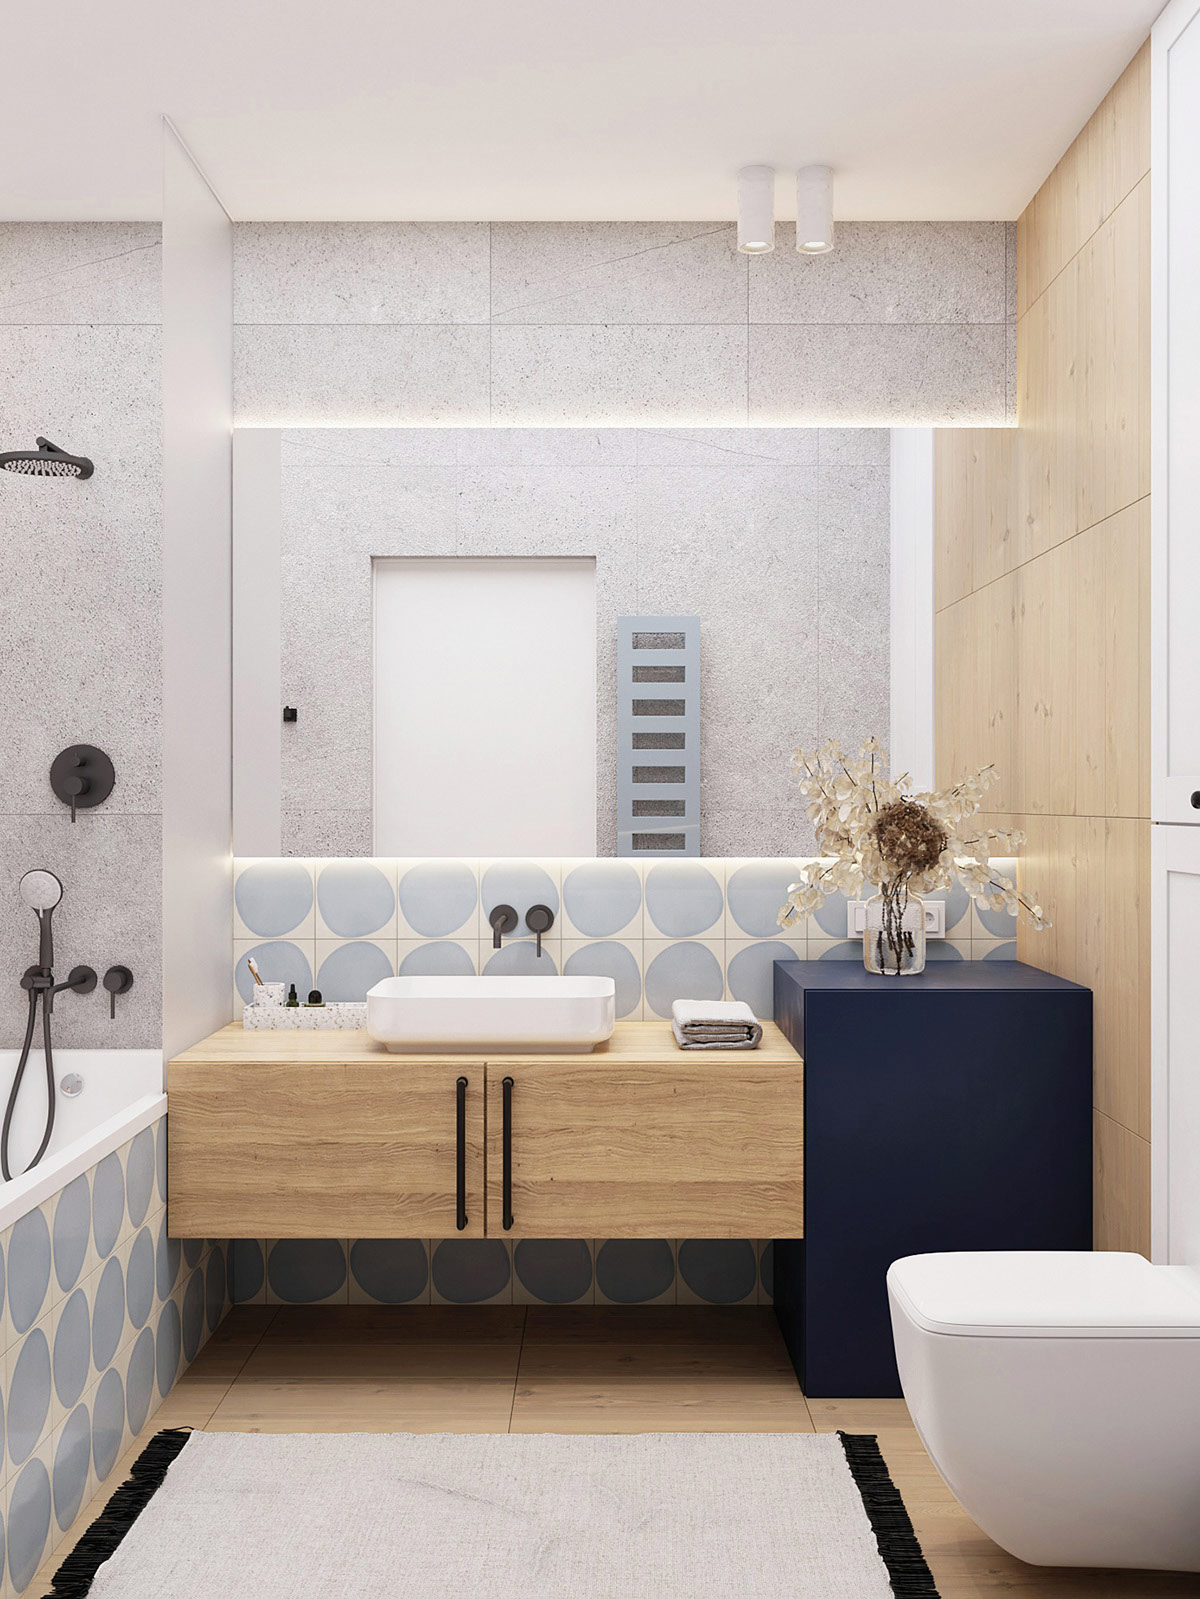 Bệ bồn rửa bồn rửa mặt phòng tắm tông màu gỗ ấm áp, hài hòa với khối điểm nhấn màu xanh đậm bên cạnh.